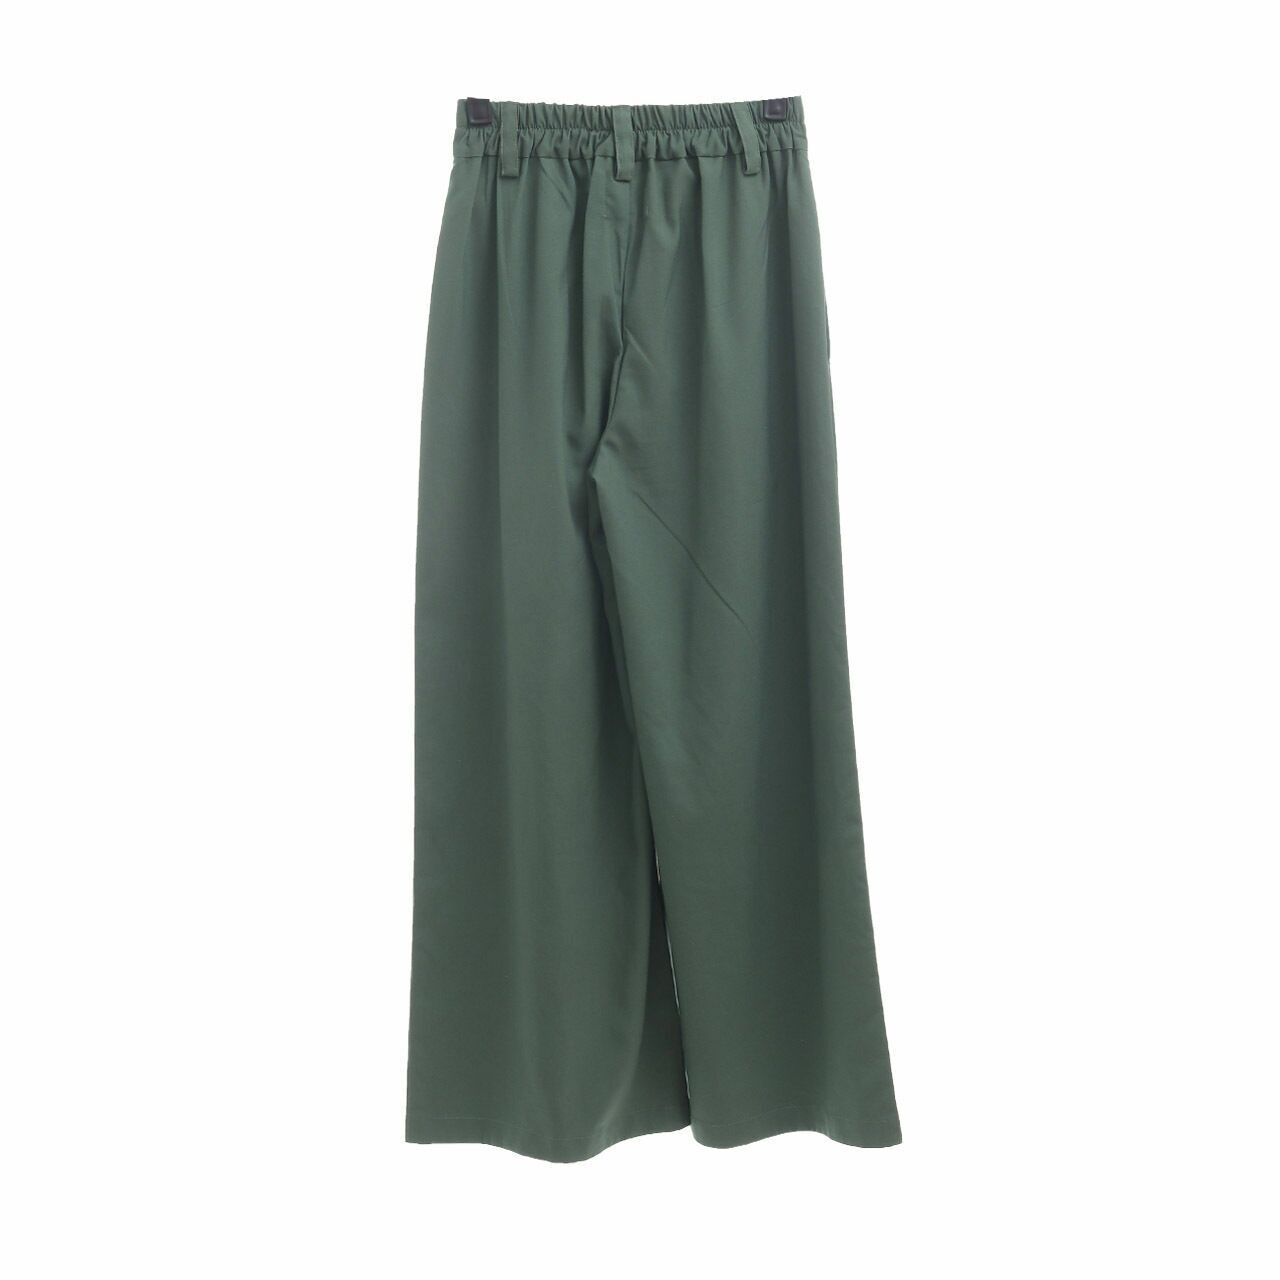 ATS The Label Green Cullotes Long Pants